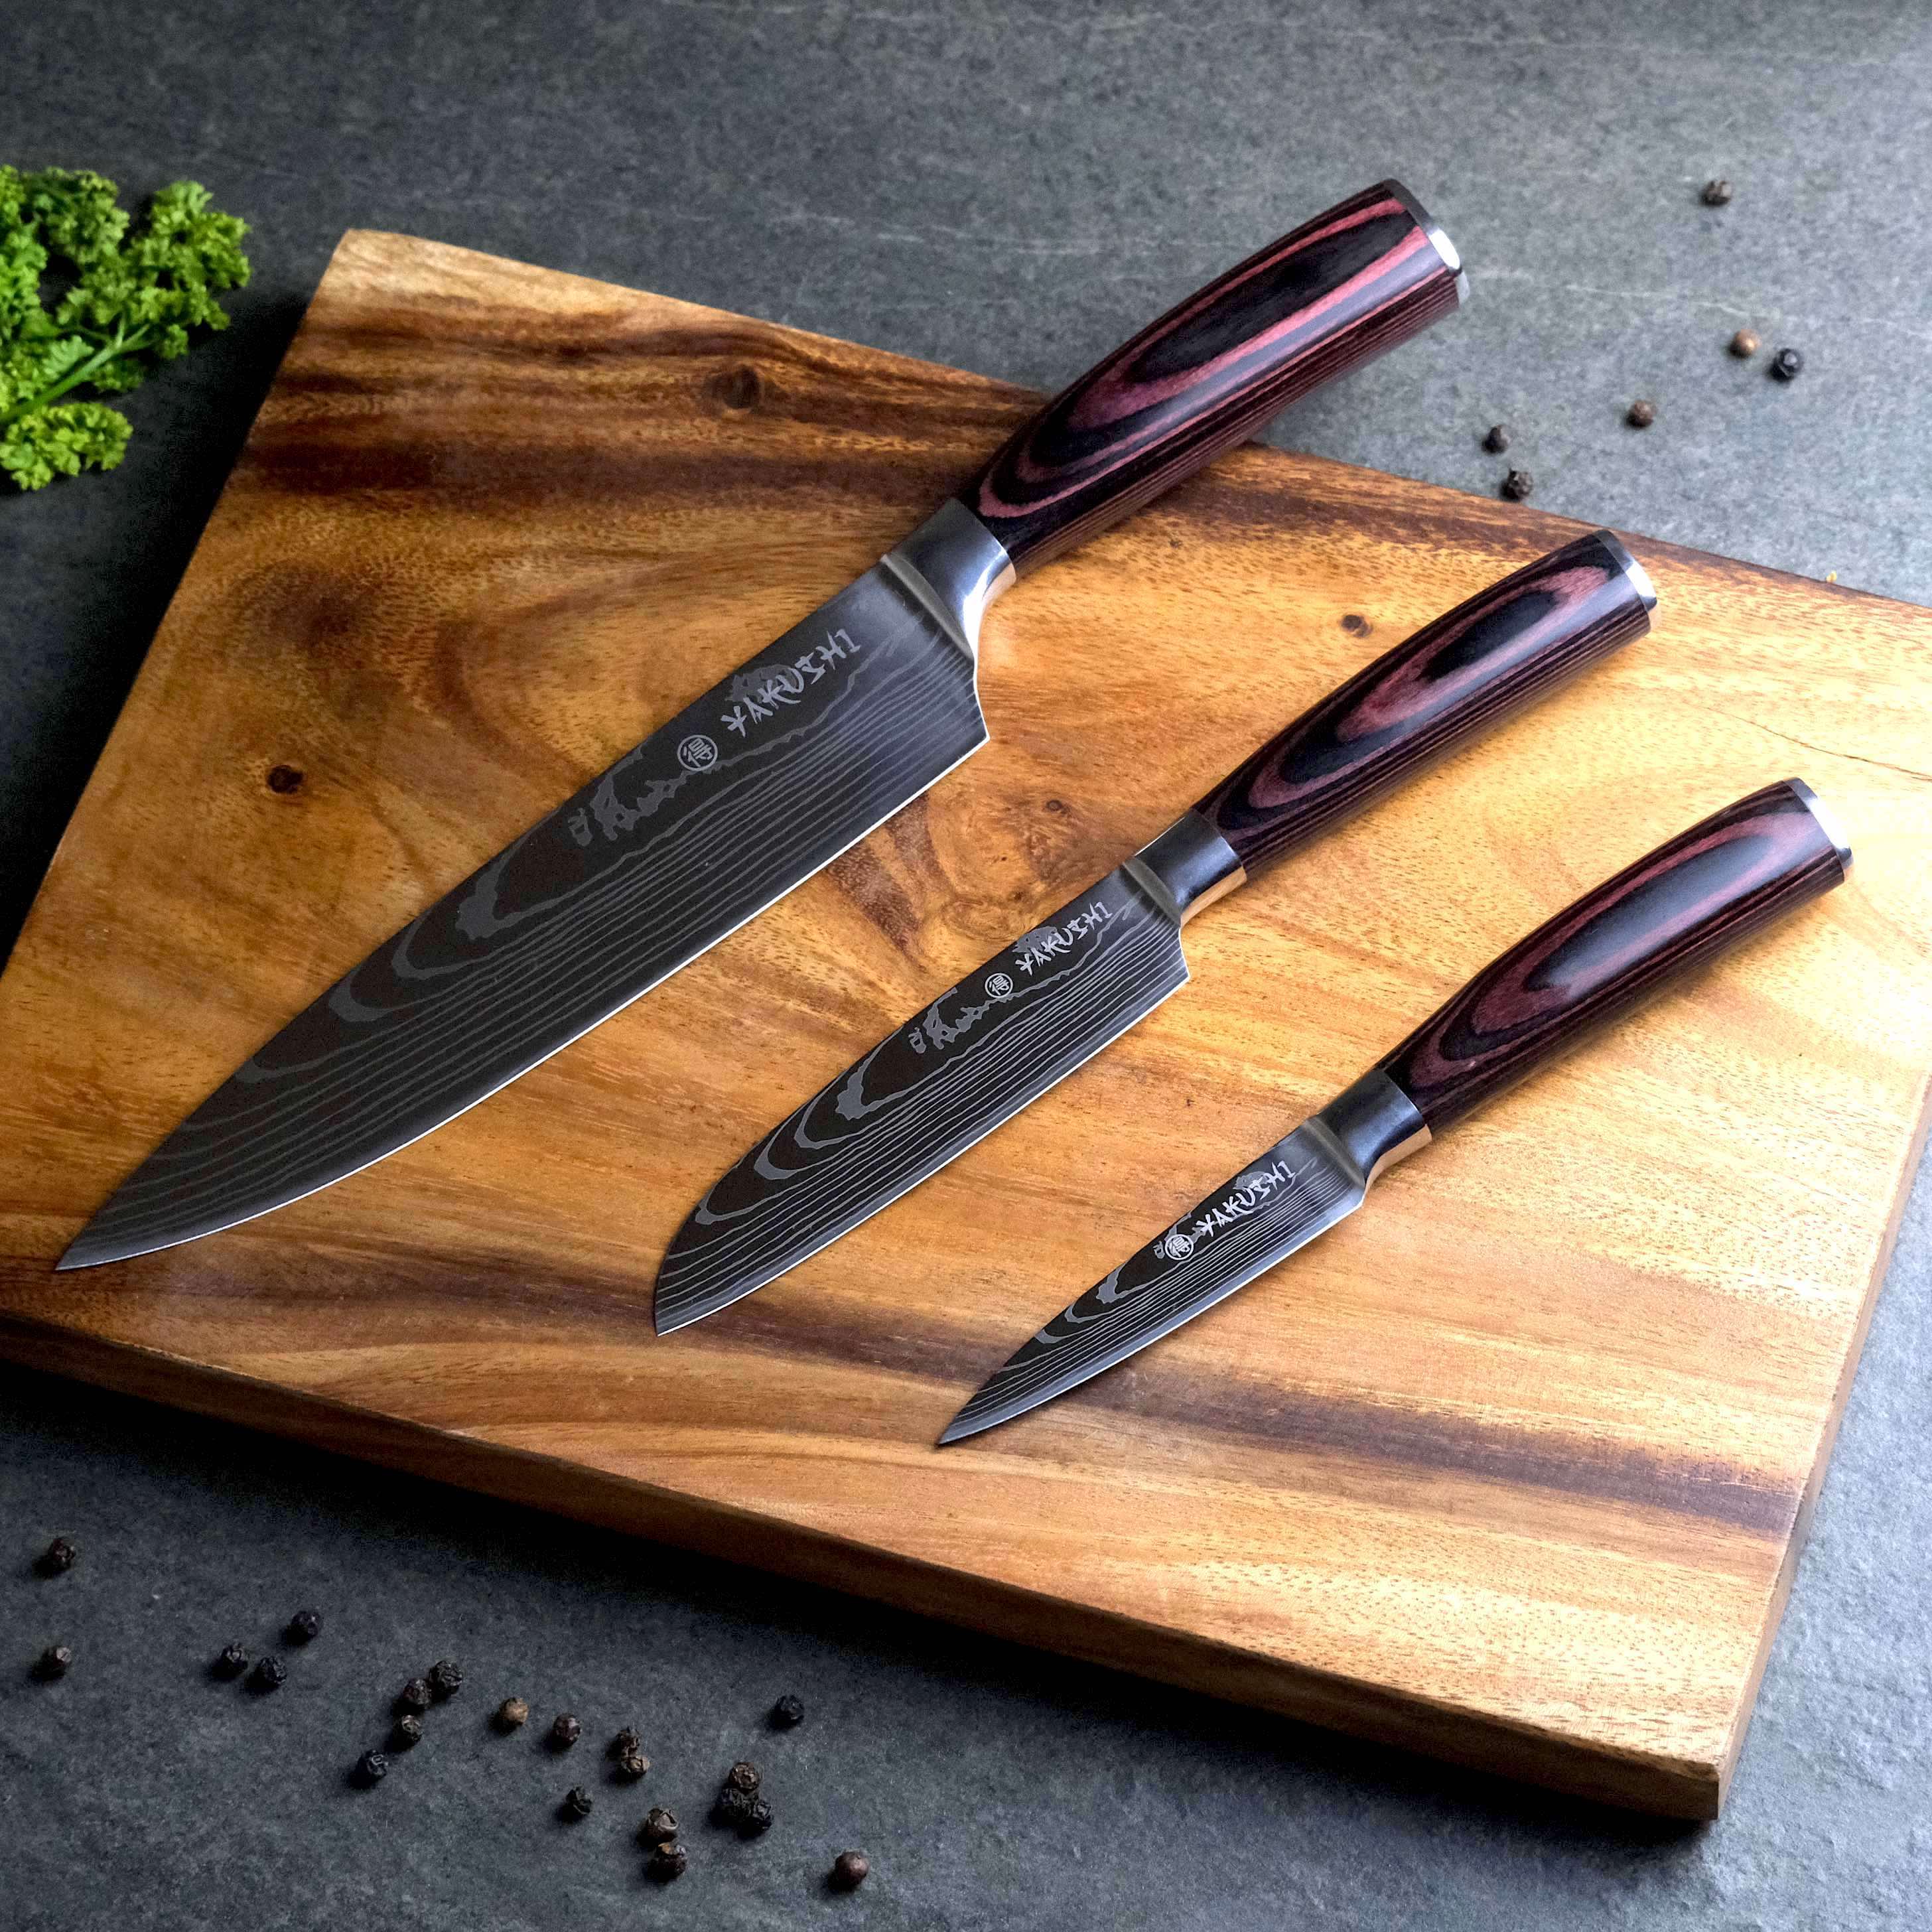 Best knife sets